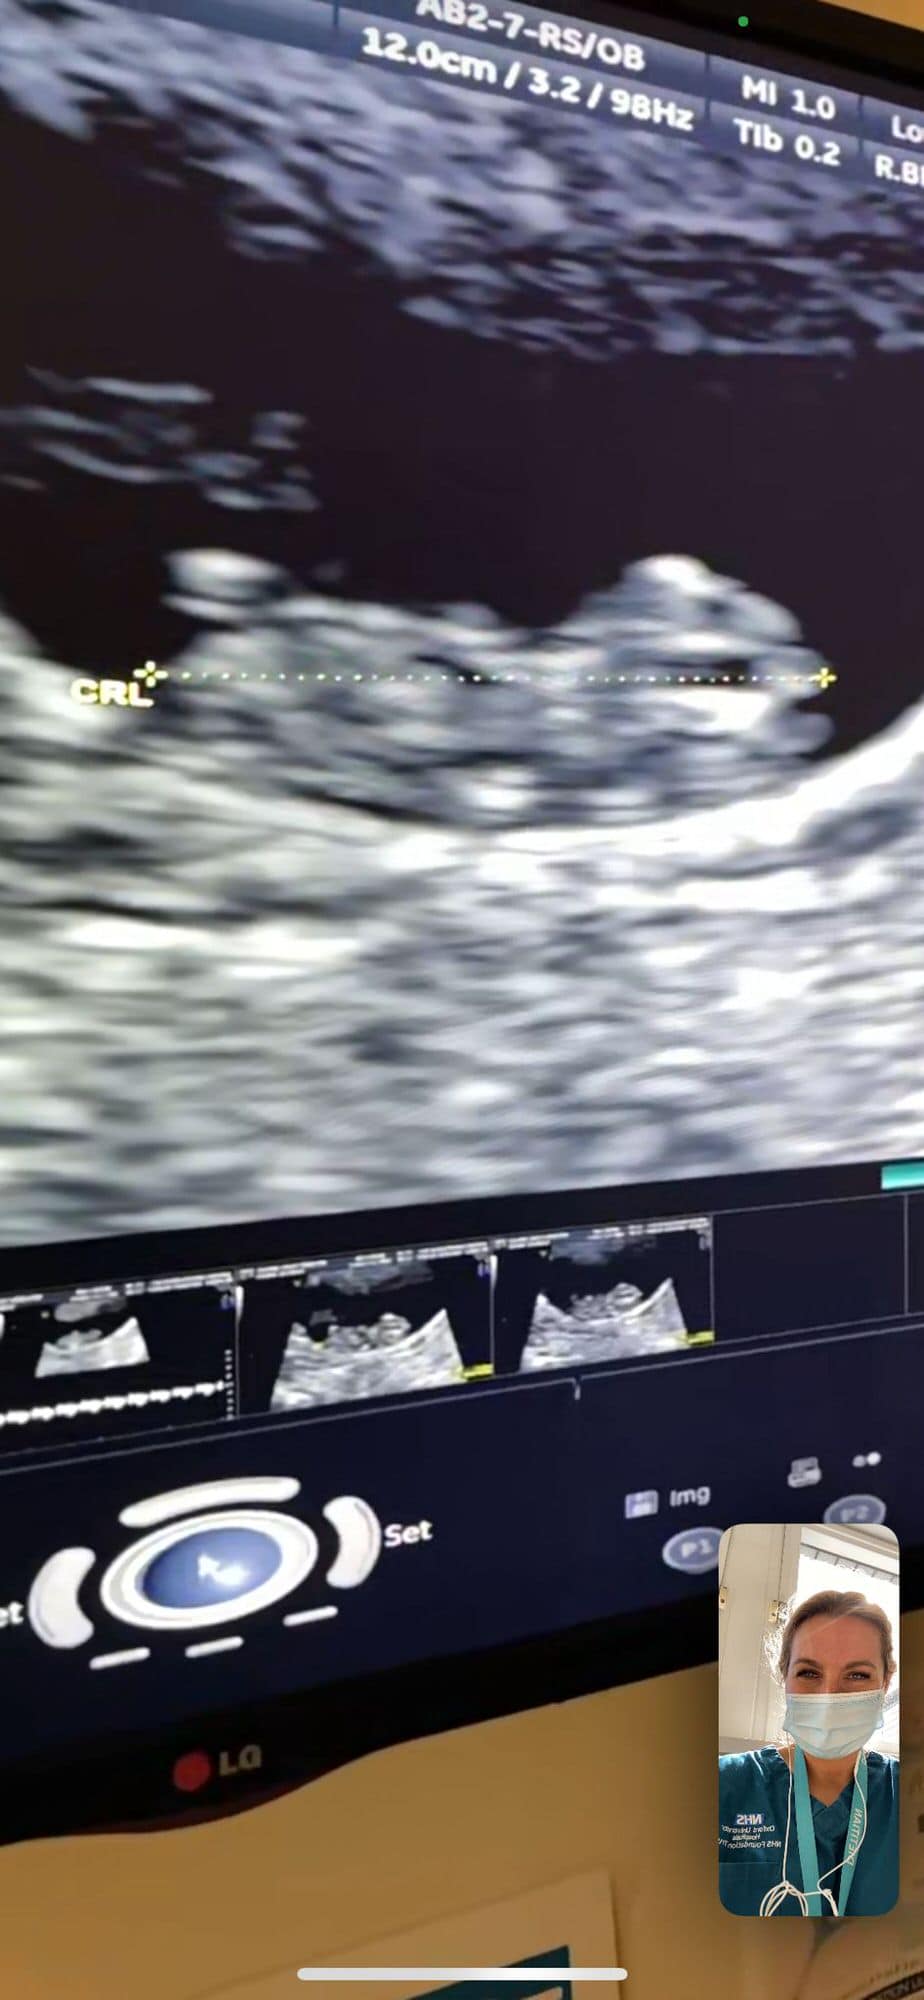 Facetime ultrasound scan